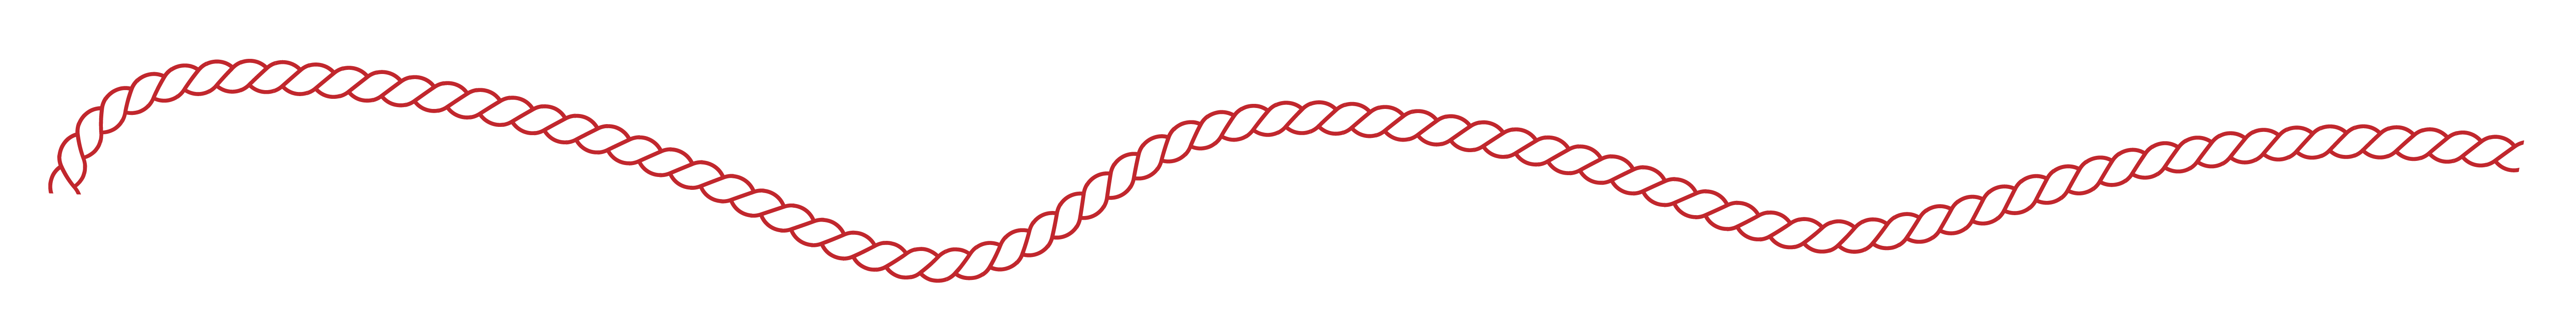 illustration på ett rep som kringlar sig